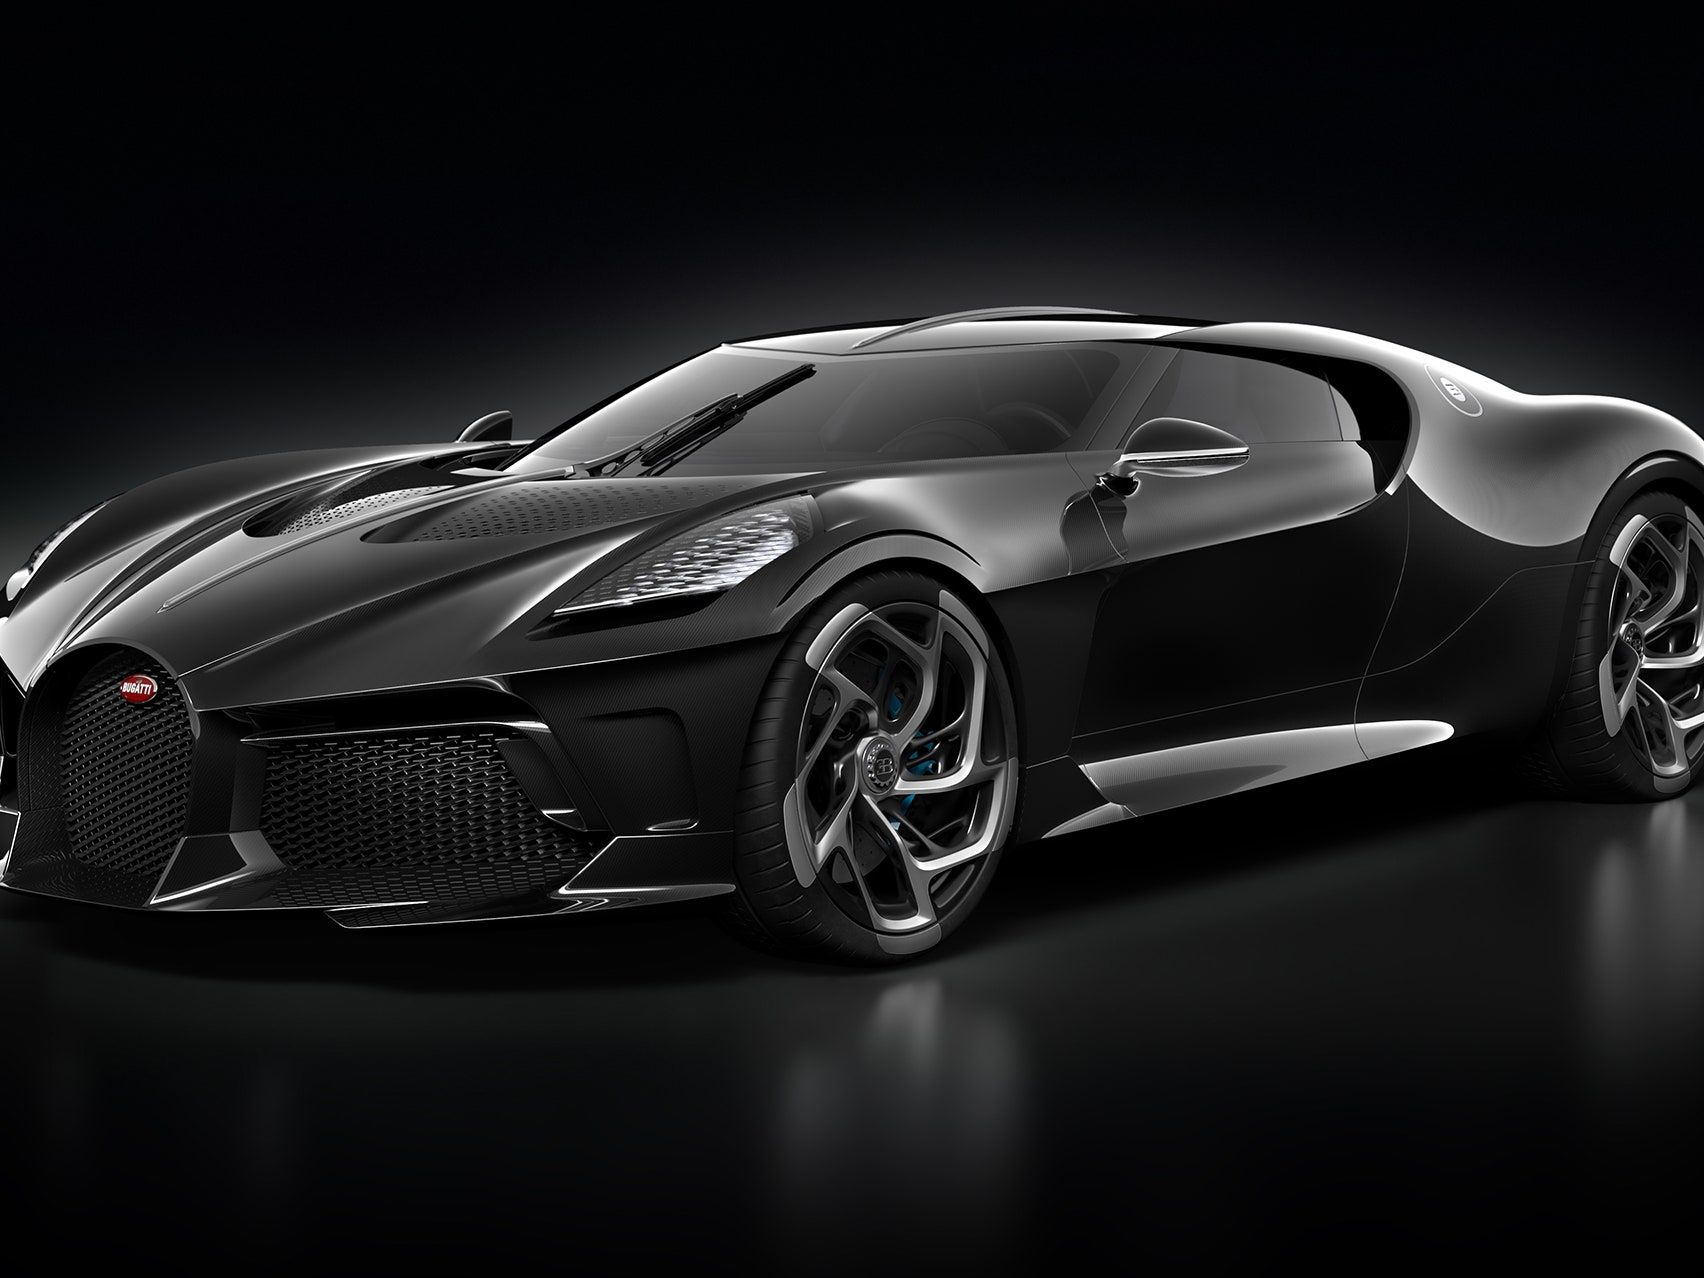 Bugatti Hintergrundbild 1704x1278. The Bugatti “La Voiture Noire” is the most expensive new car in the world